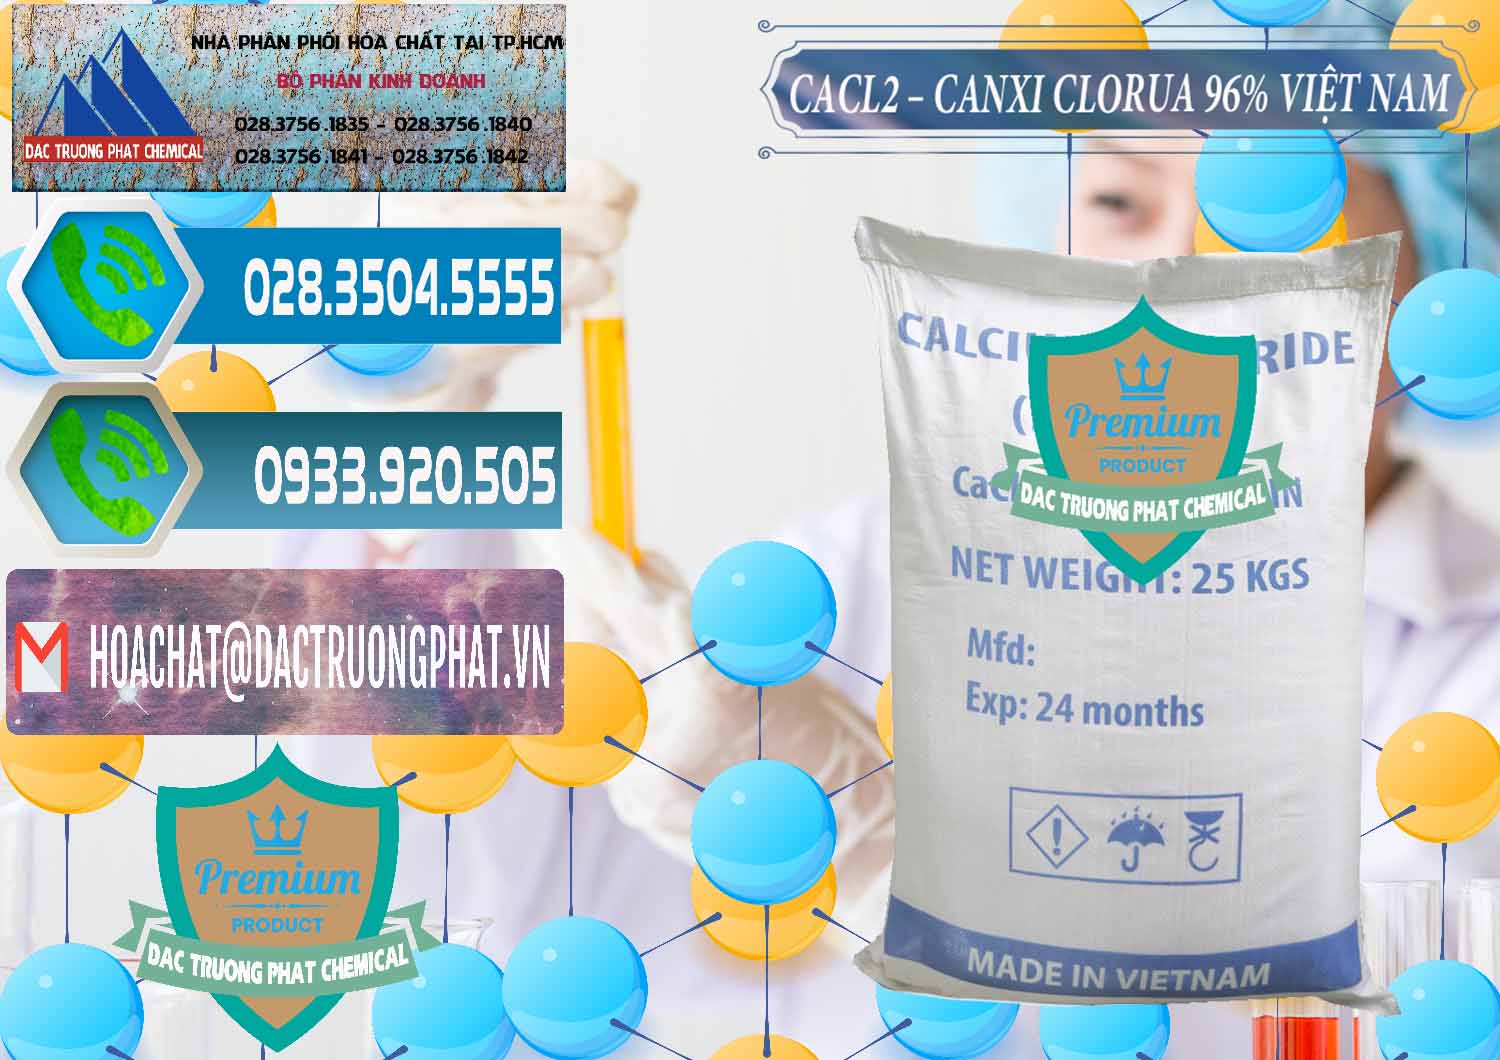 Nơi chuyên phân phối - cung ứng CaCl2 – Canxi Clorua 96% Việt Nam - 0236 - Kinh doanh và cung cấp hóa chất tại TP.HCM - congtyhoachat.net